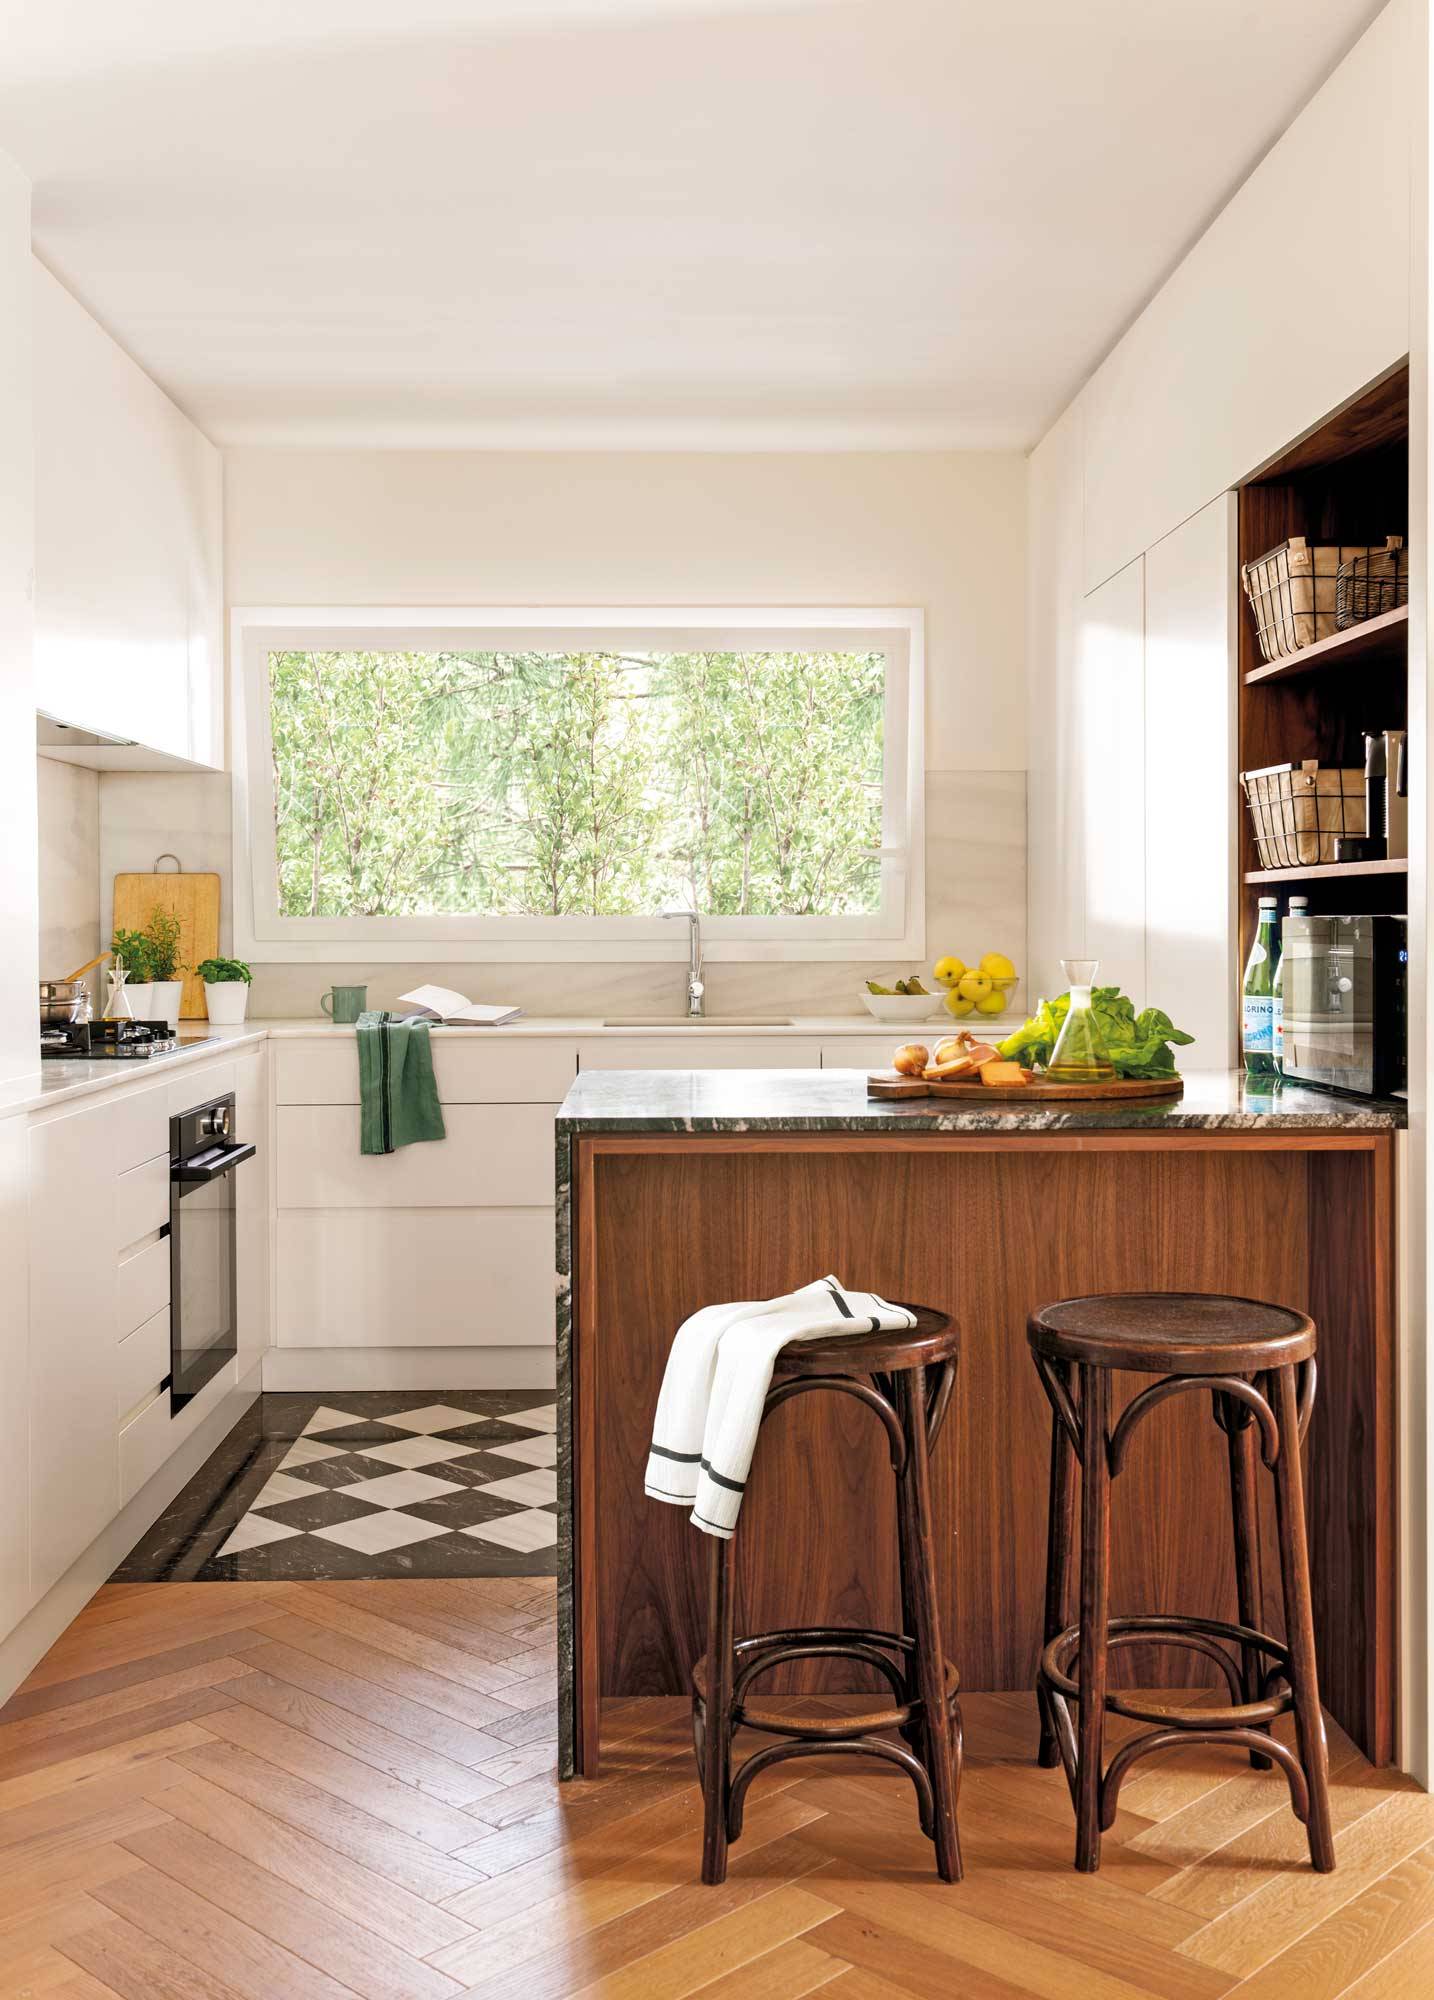 Cocina blanca pequeña con suelo de azulejos y madera, y pequeña barra con taburetes de madera.